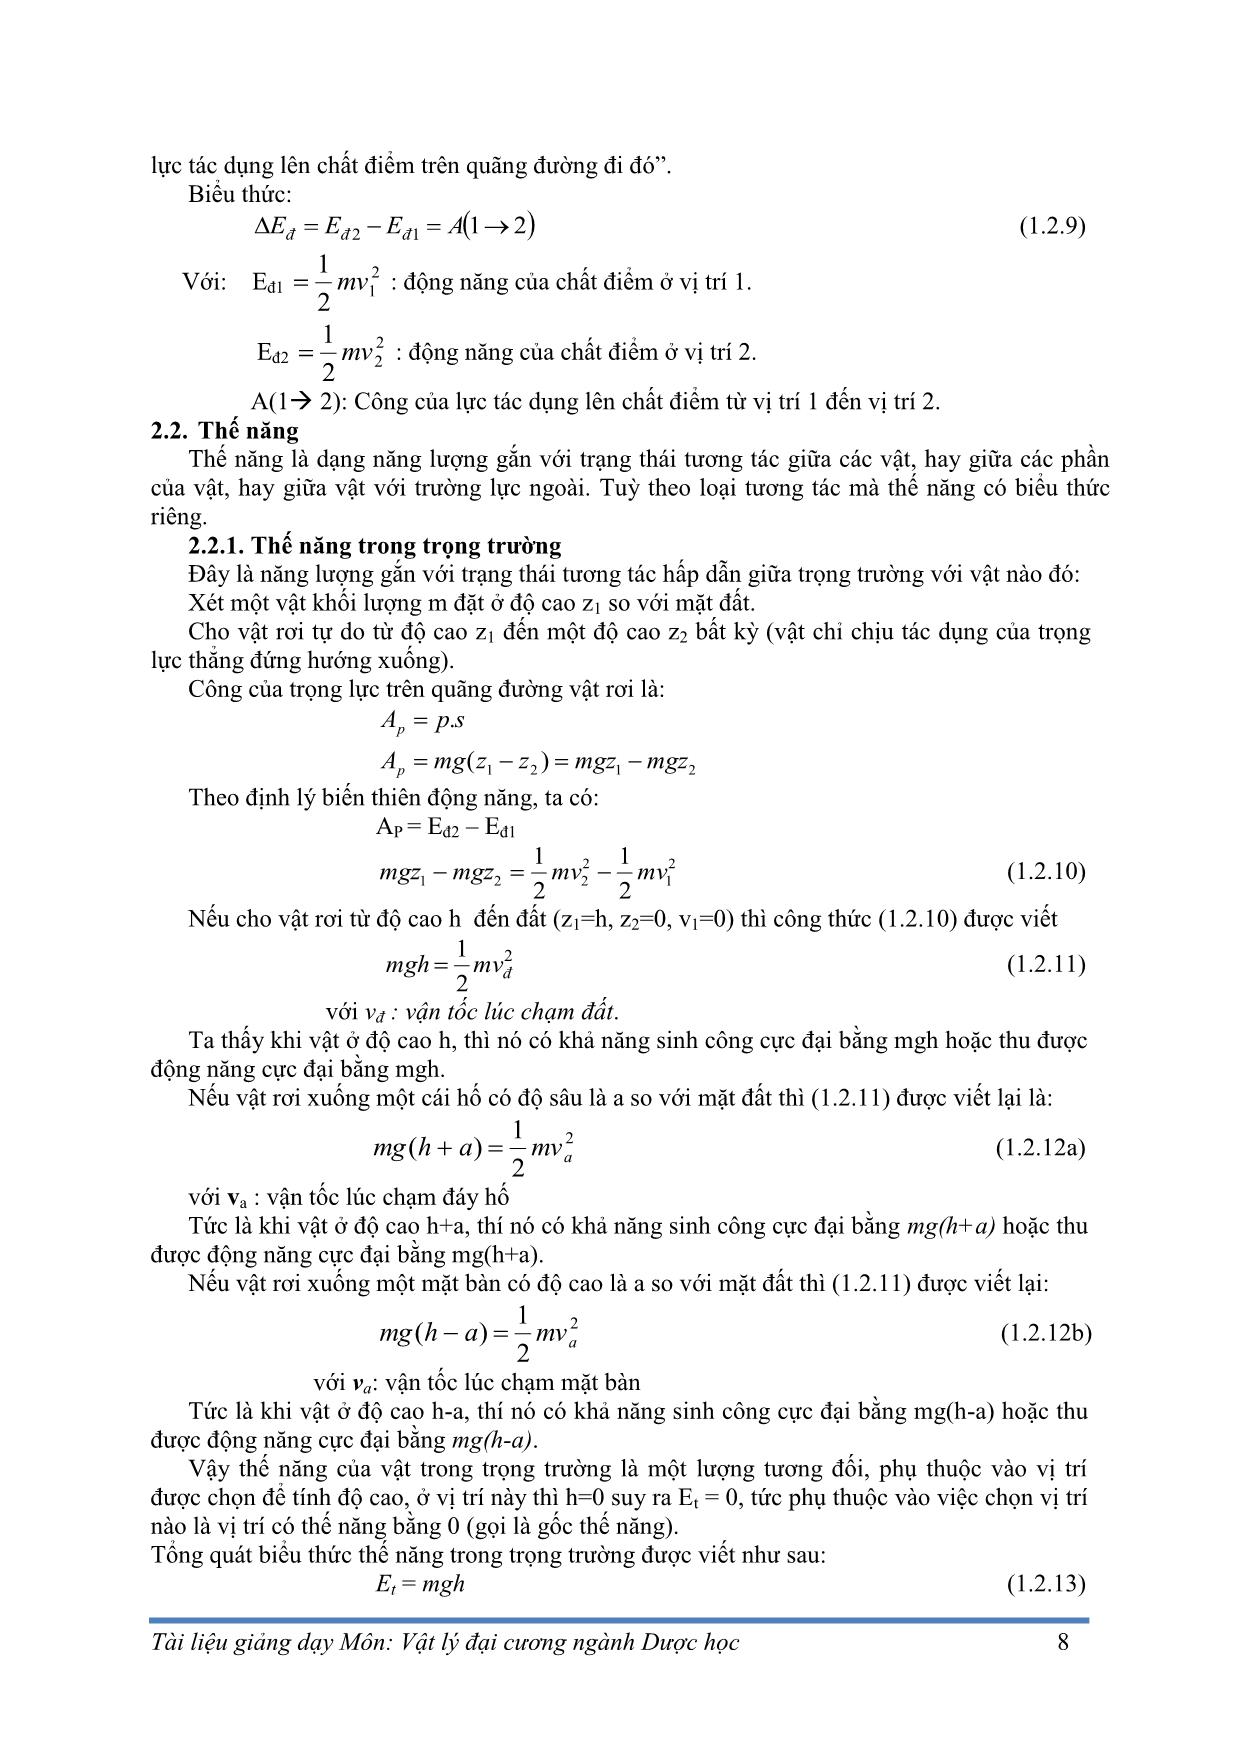 Giáo trình Vật lý đại cương - Thi Trần Anh Tuấn trang 10